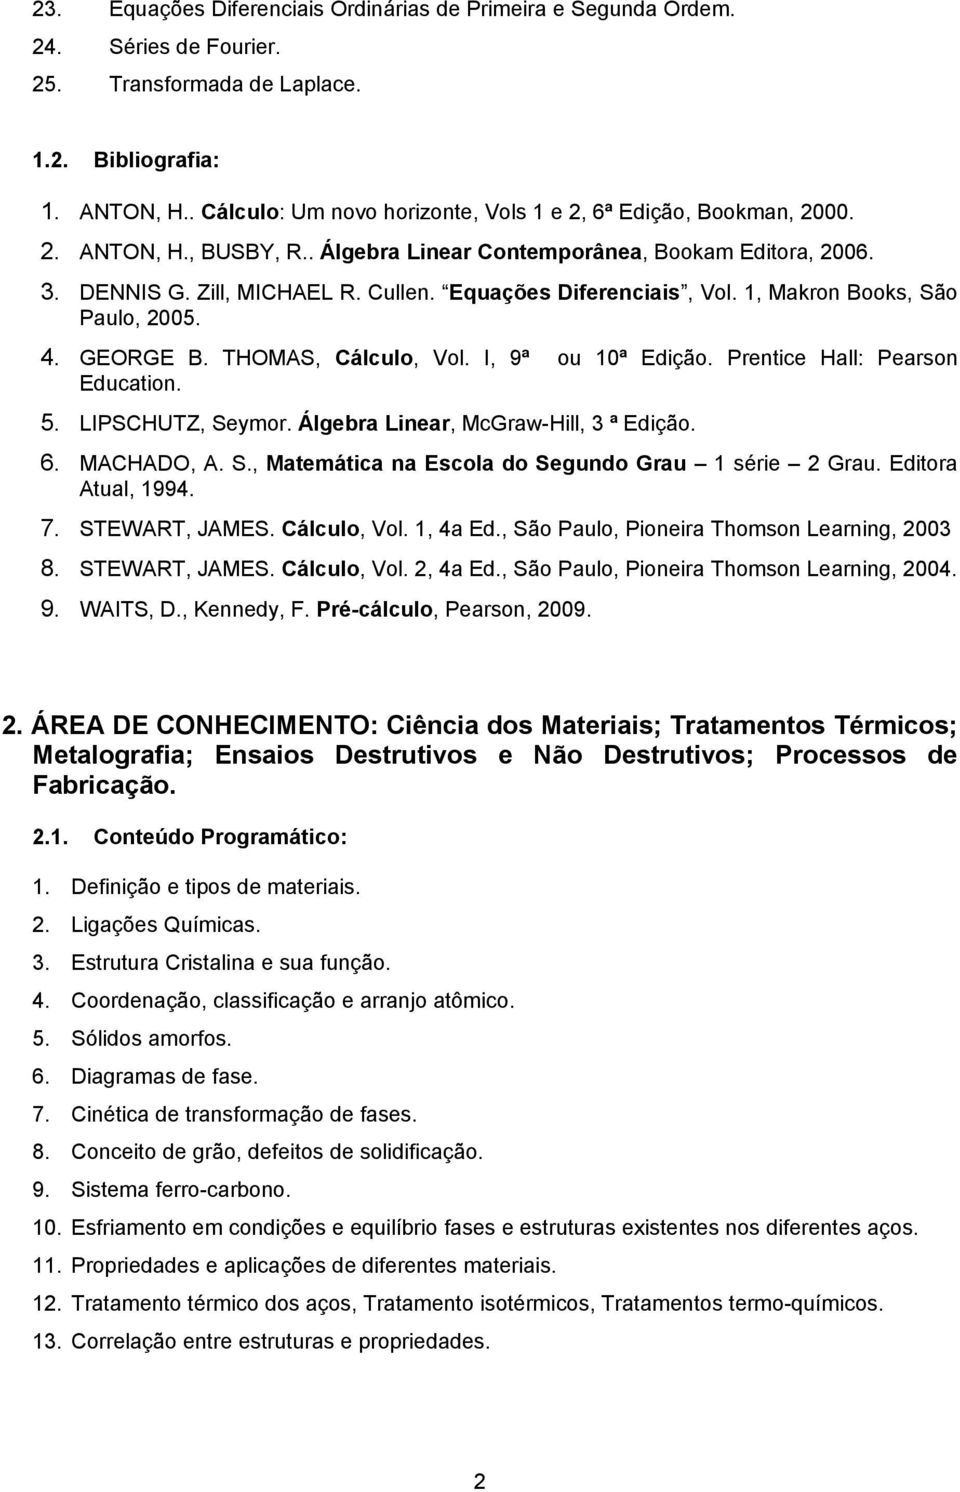 Equações Diferenciais, Vol. 1, Makron Books, São Paulo, 2005. 4. GEORGE B. THOMAS, Cálculo, Vol. I, 9ª ou 10ª Edição. Prentice Hall: Pearson Education. 5. LIPSCHUTZ, Seymor.